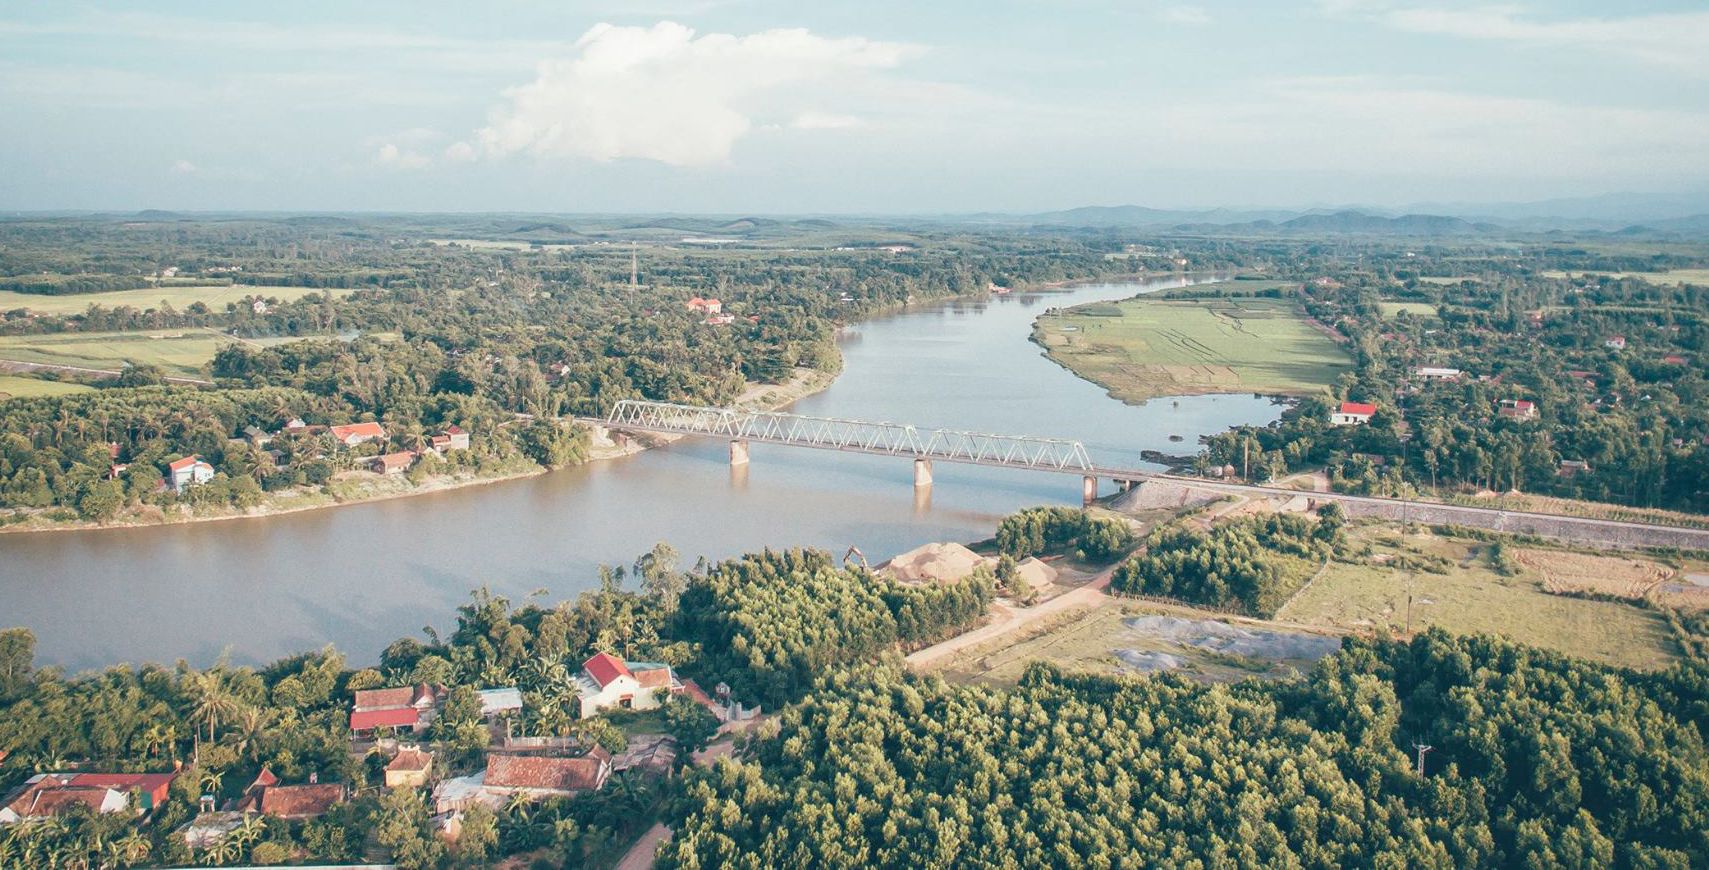 Vì sao dòng sông Kiến Giang nổi tiếng ở Quảng Bình còn có tên khác là sông Nghịch Hà? - Ảnh 3.